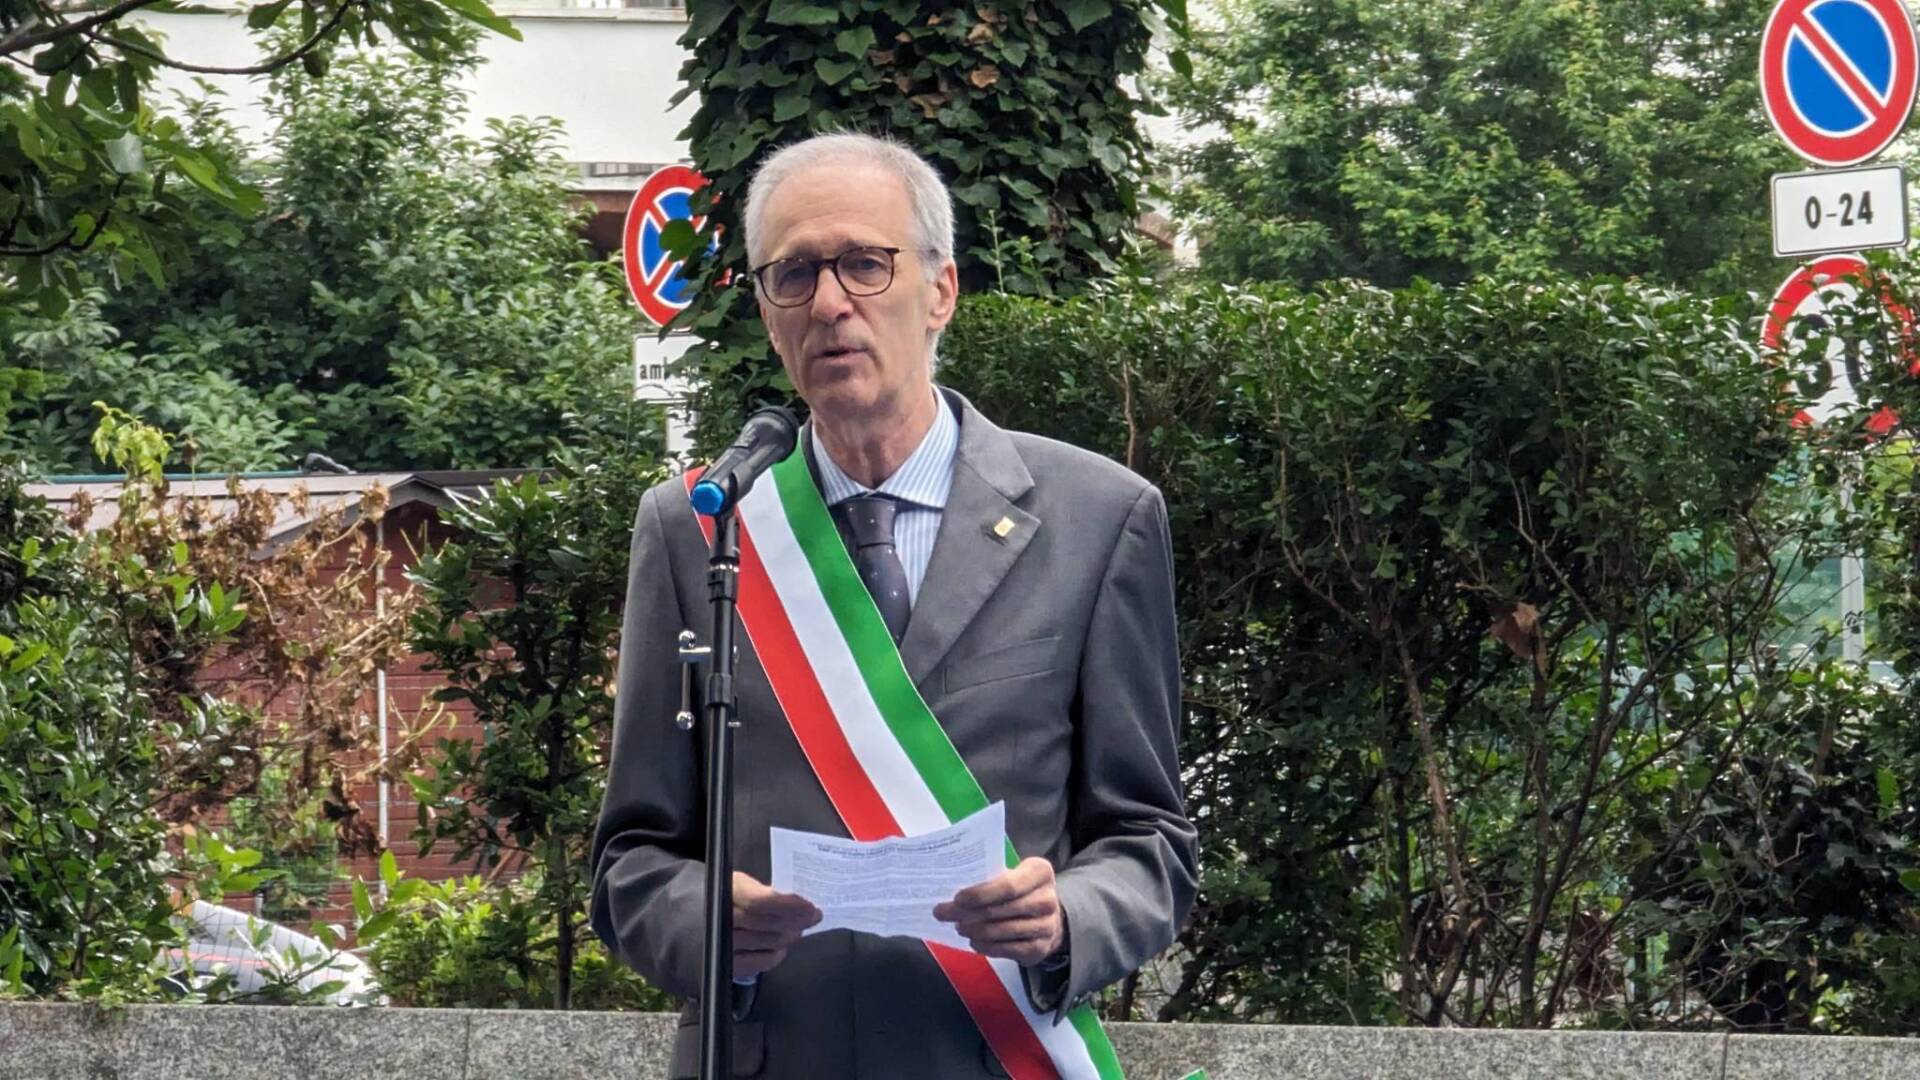 Saronno, discorso del sindaco sull’intitolazione a Matteotti: “Confermiamo un’irrevocabile scelta di campo per la democrazia”